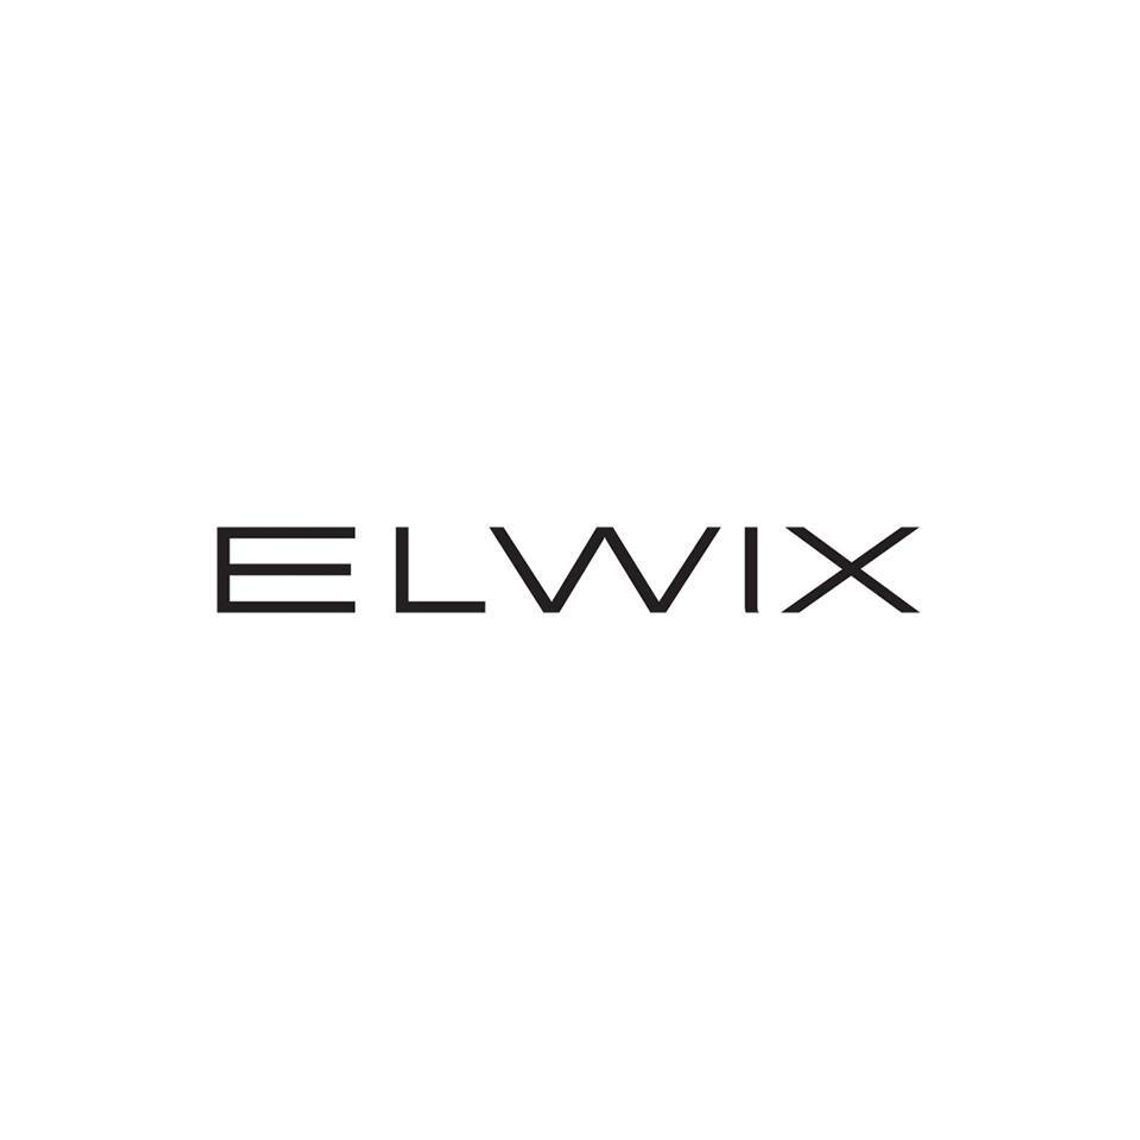 Elwix